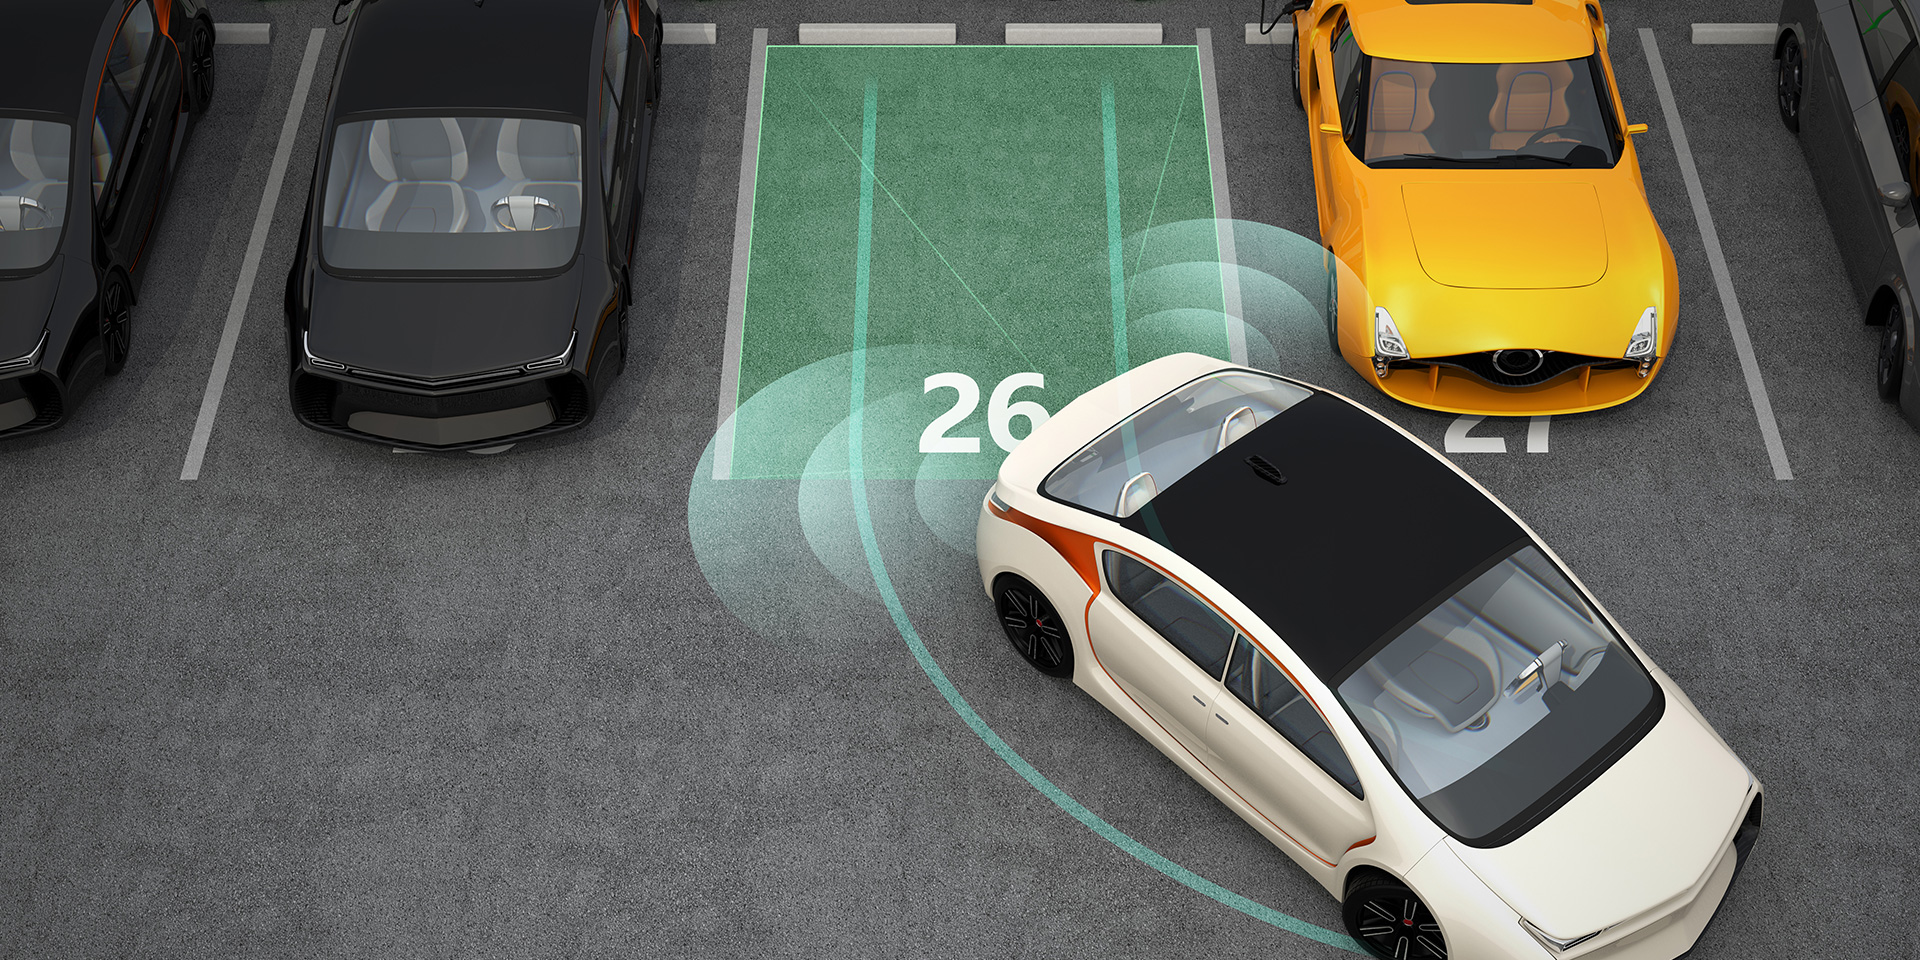 پارکینگ هوشمند - <ul>  	<li>سامانه های پلاک خوان خودرو</li>  	<li>سامانه های هدایتگر محل پارک</li>  	<li>سامانه های مدیریت هوشمند</li>  	<li>پارکینگ سامانه های کنترل تردد خودرو</li> </ul>